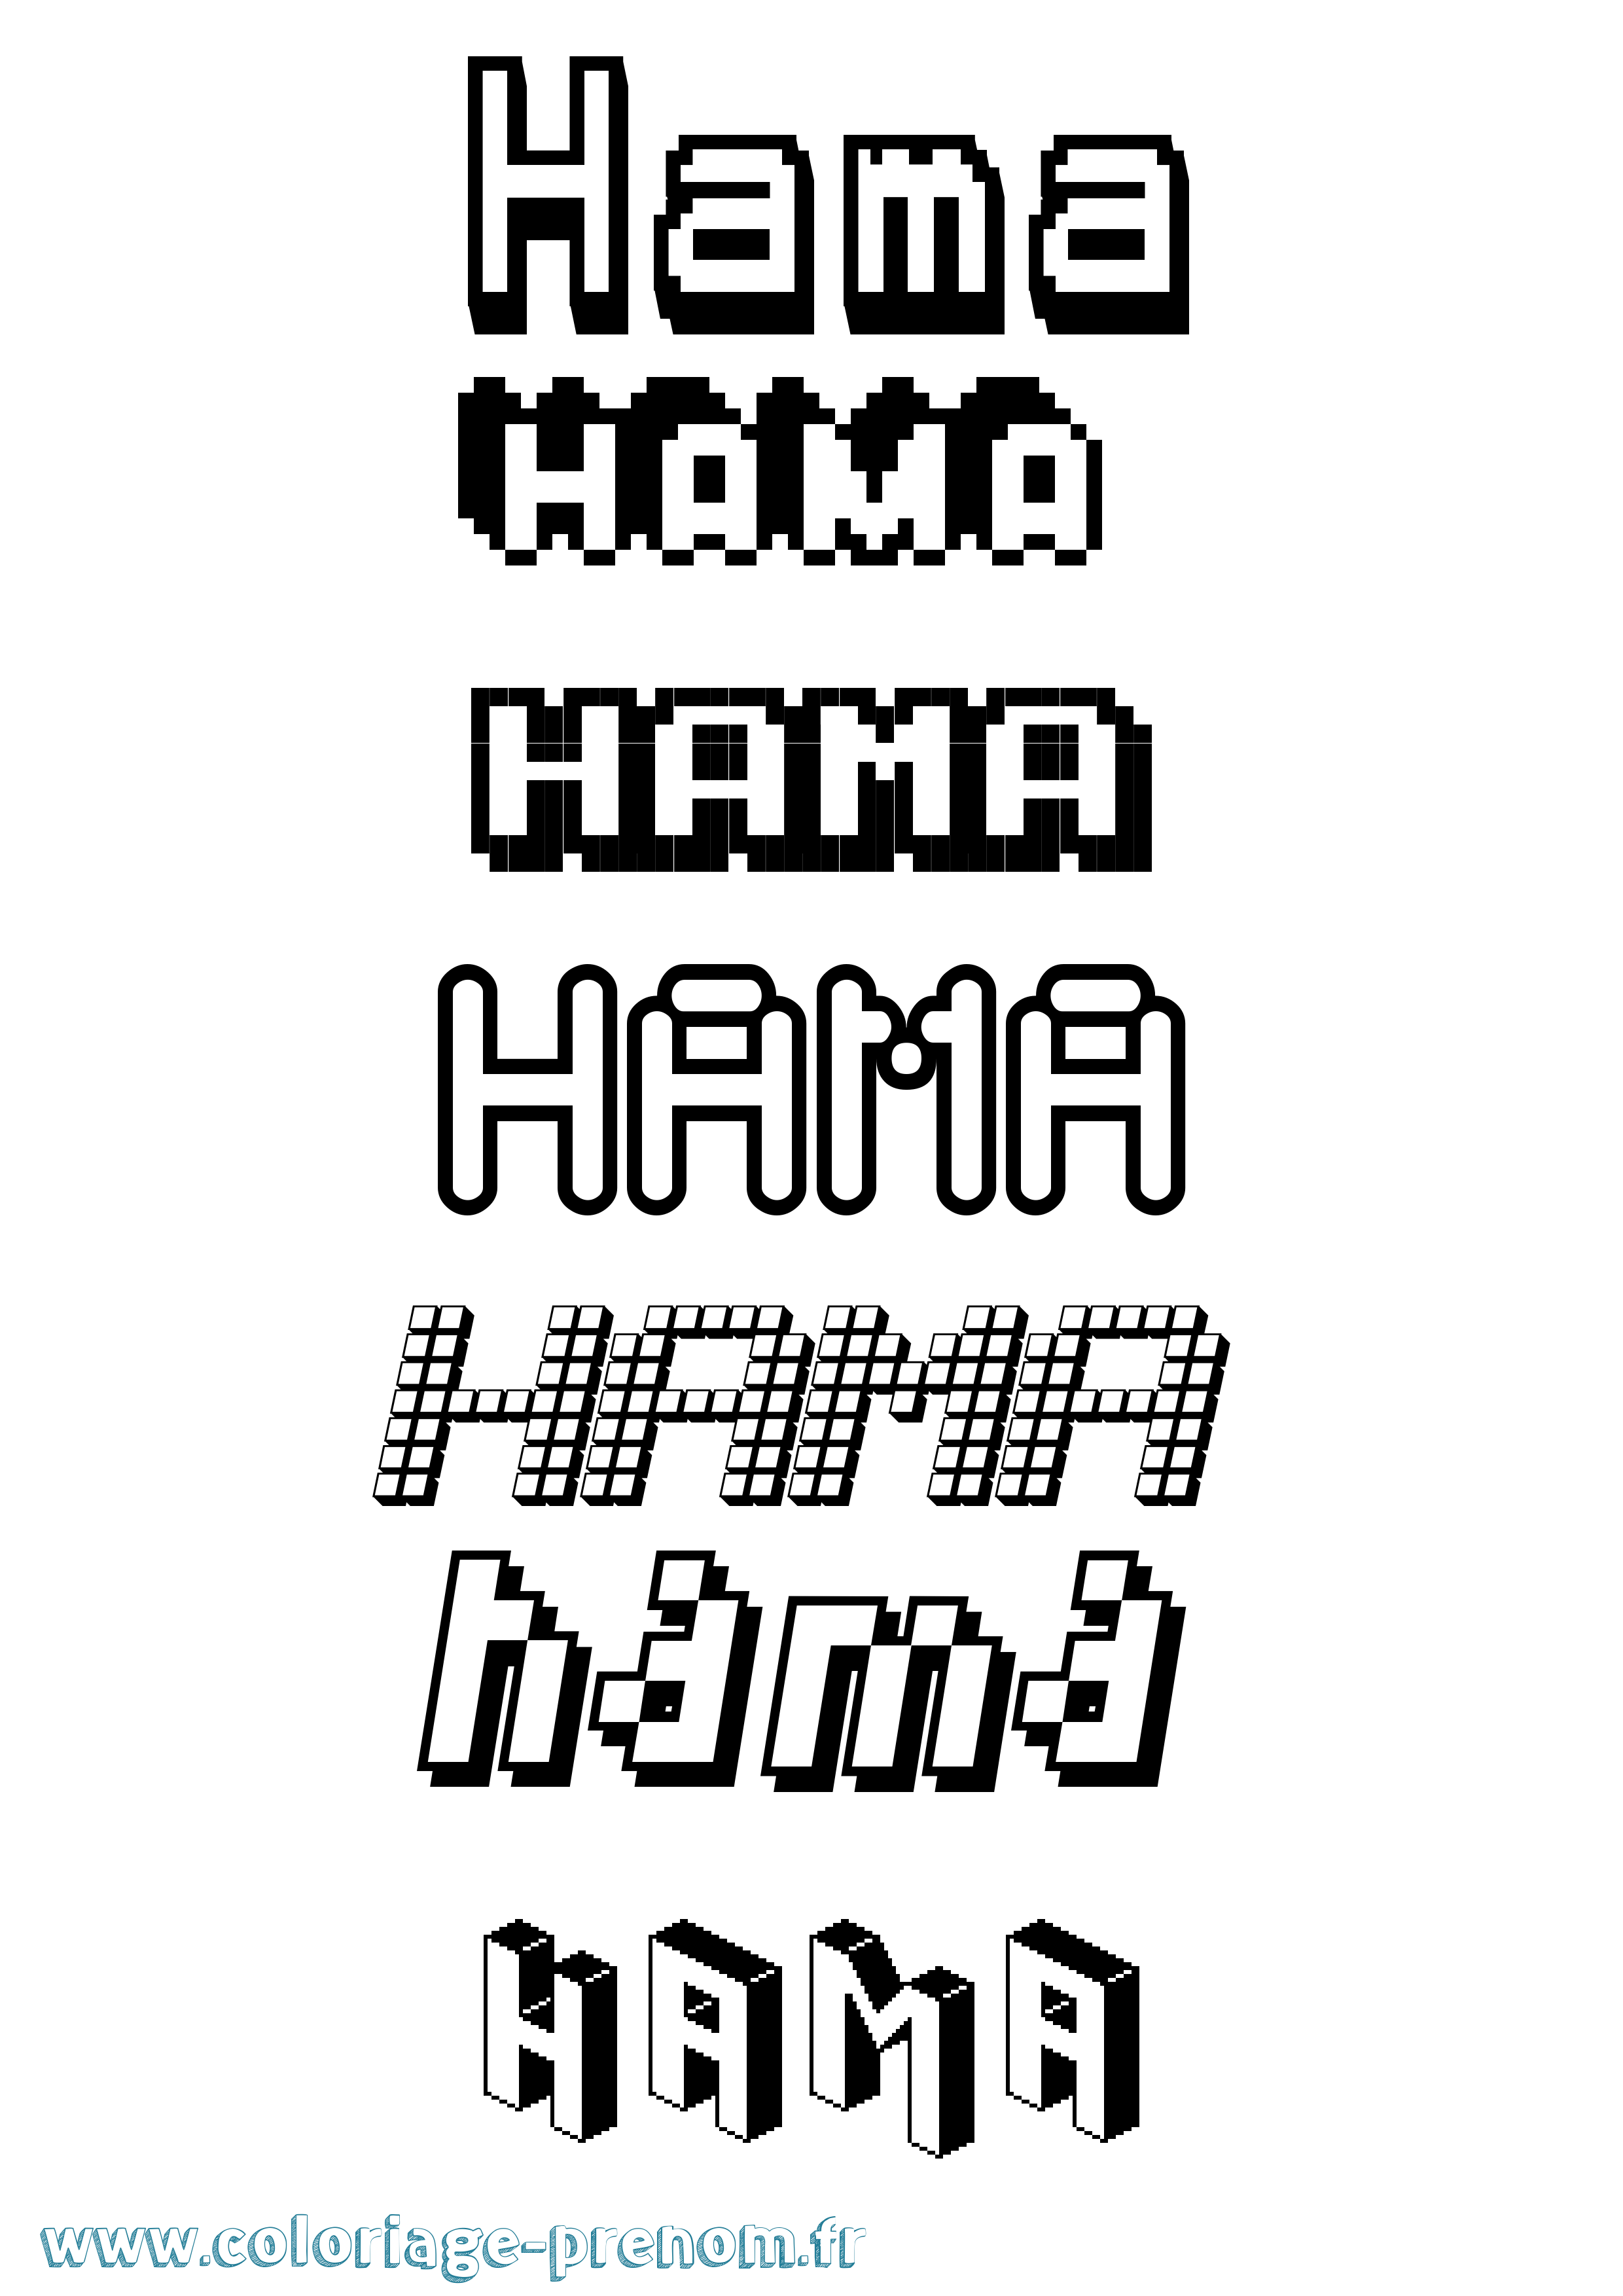 Coloriage prénom Hama Pixel